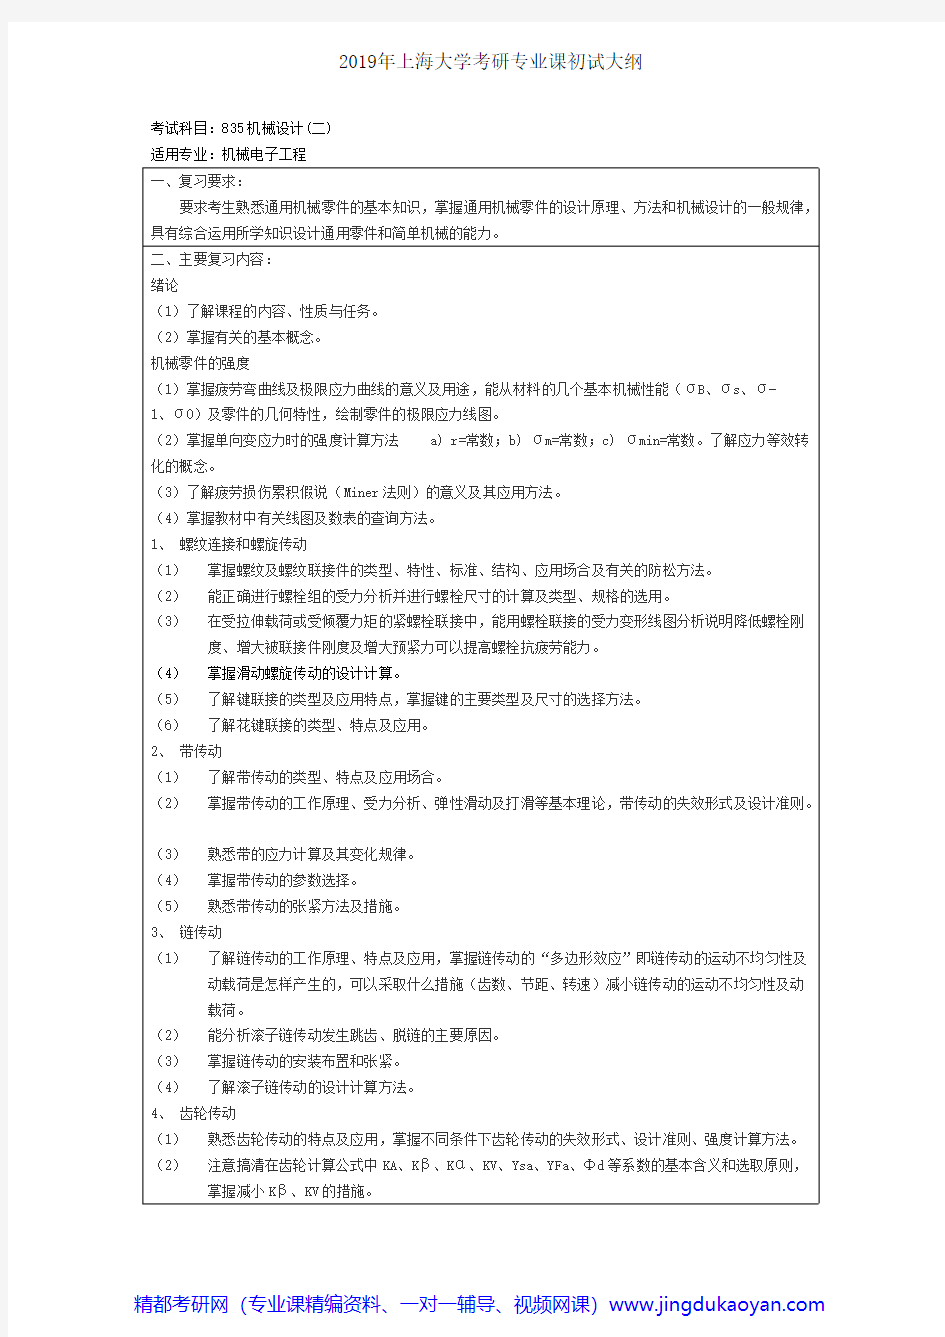 上海大学835机械设计(二)2018年考研专业课大纲